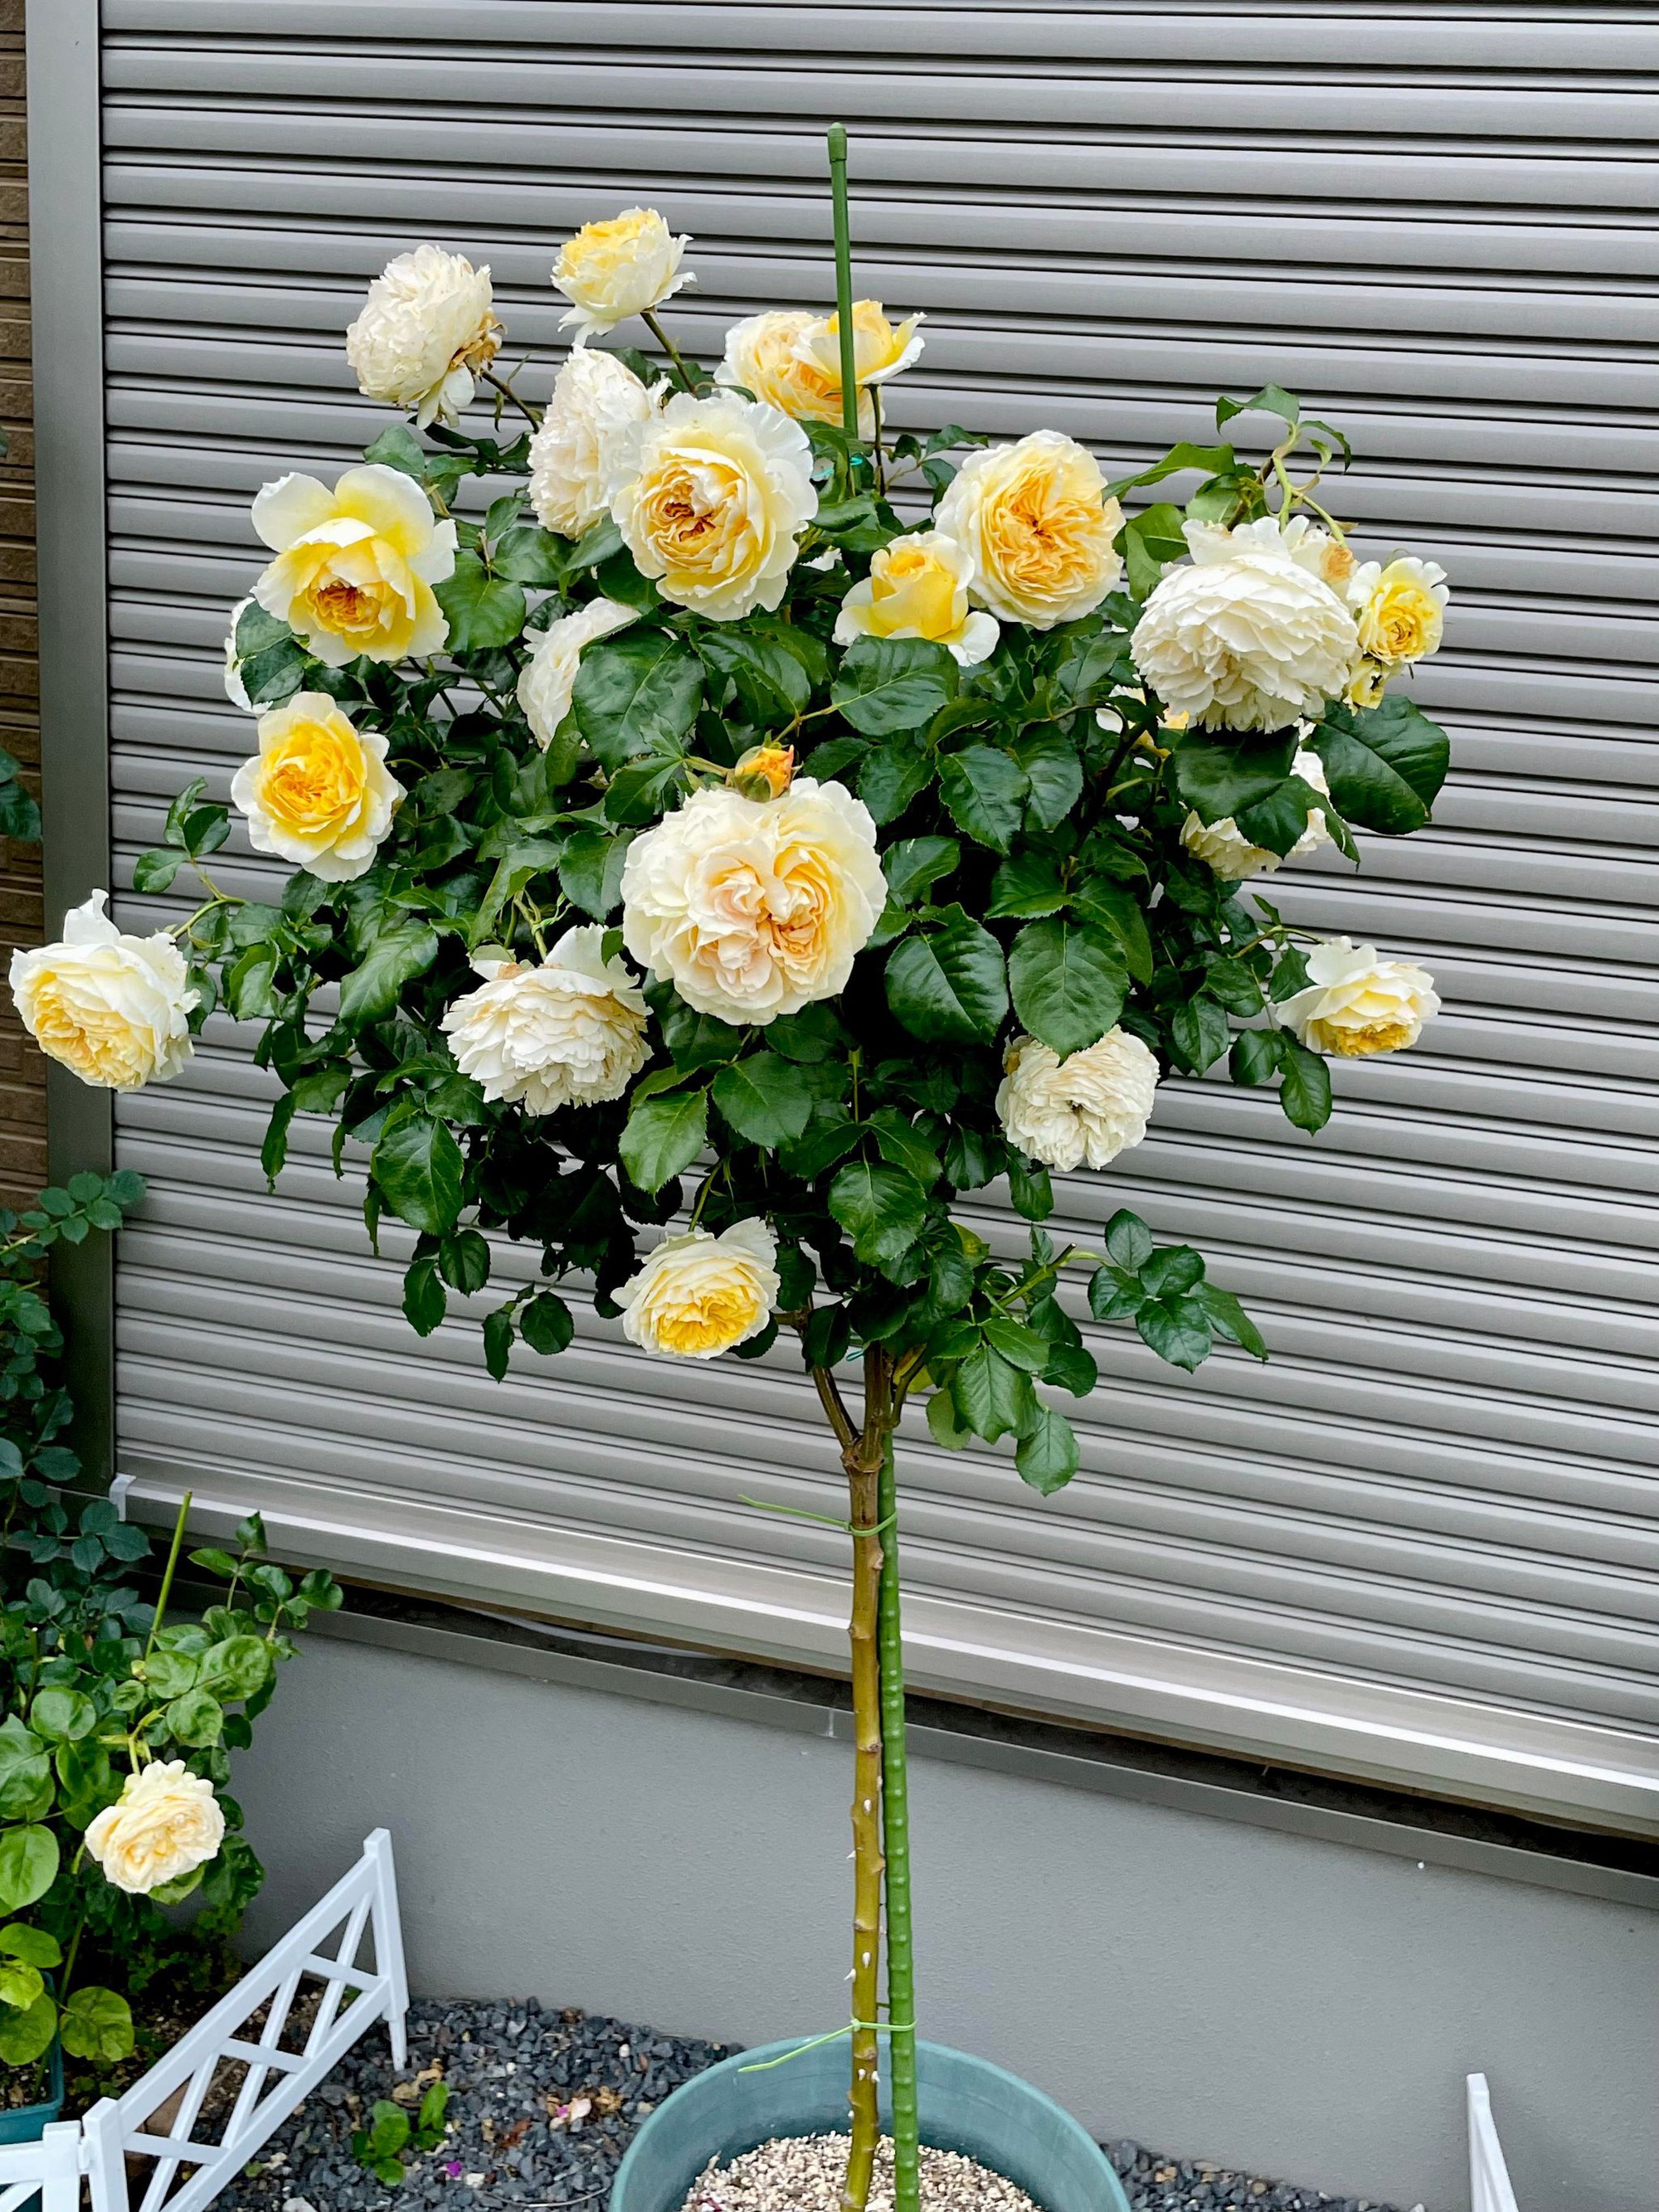 Ngôi nhà lúc nào cũng thơm nức mùi hoa vì có vườn hồng hơn 80 loại của mẹ Việt ở Nhật- Ảnh 16.